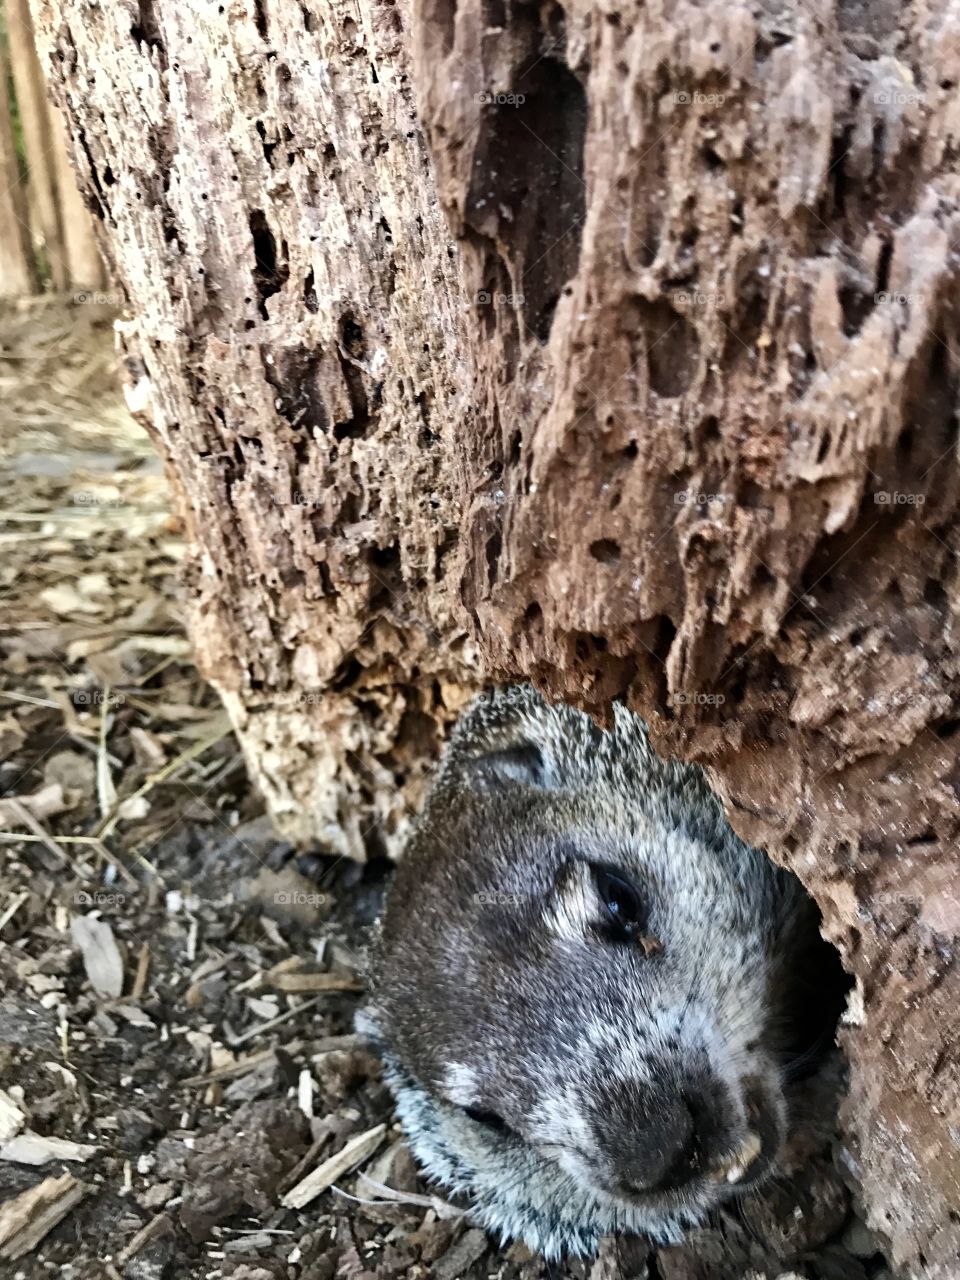 Groundhog peeking